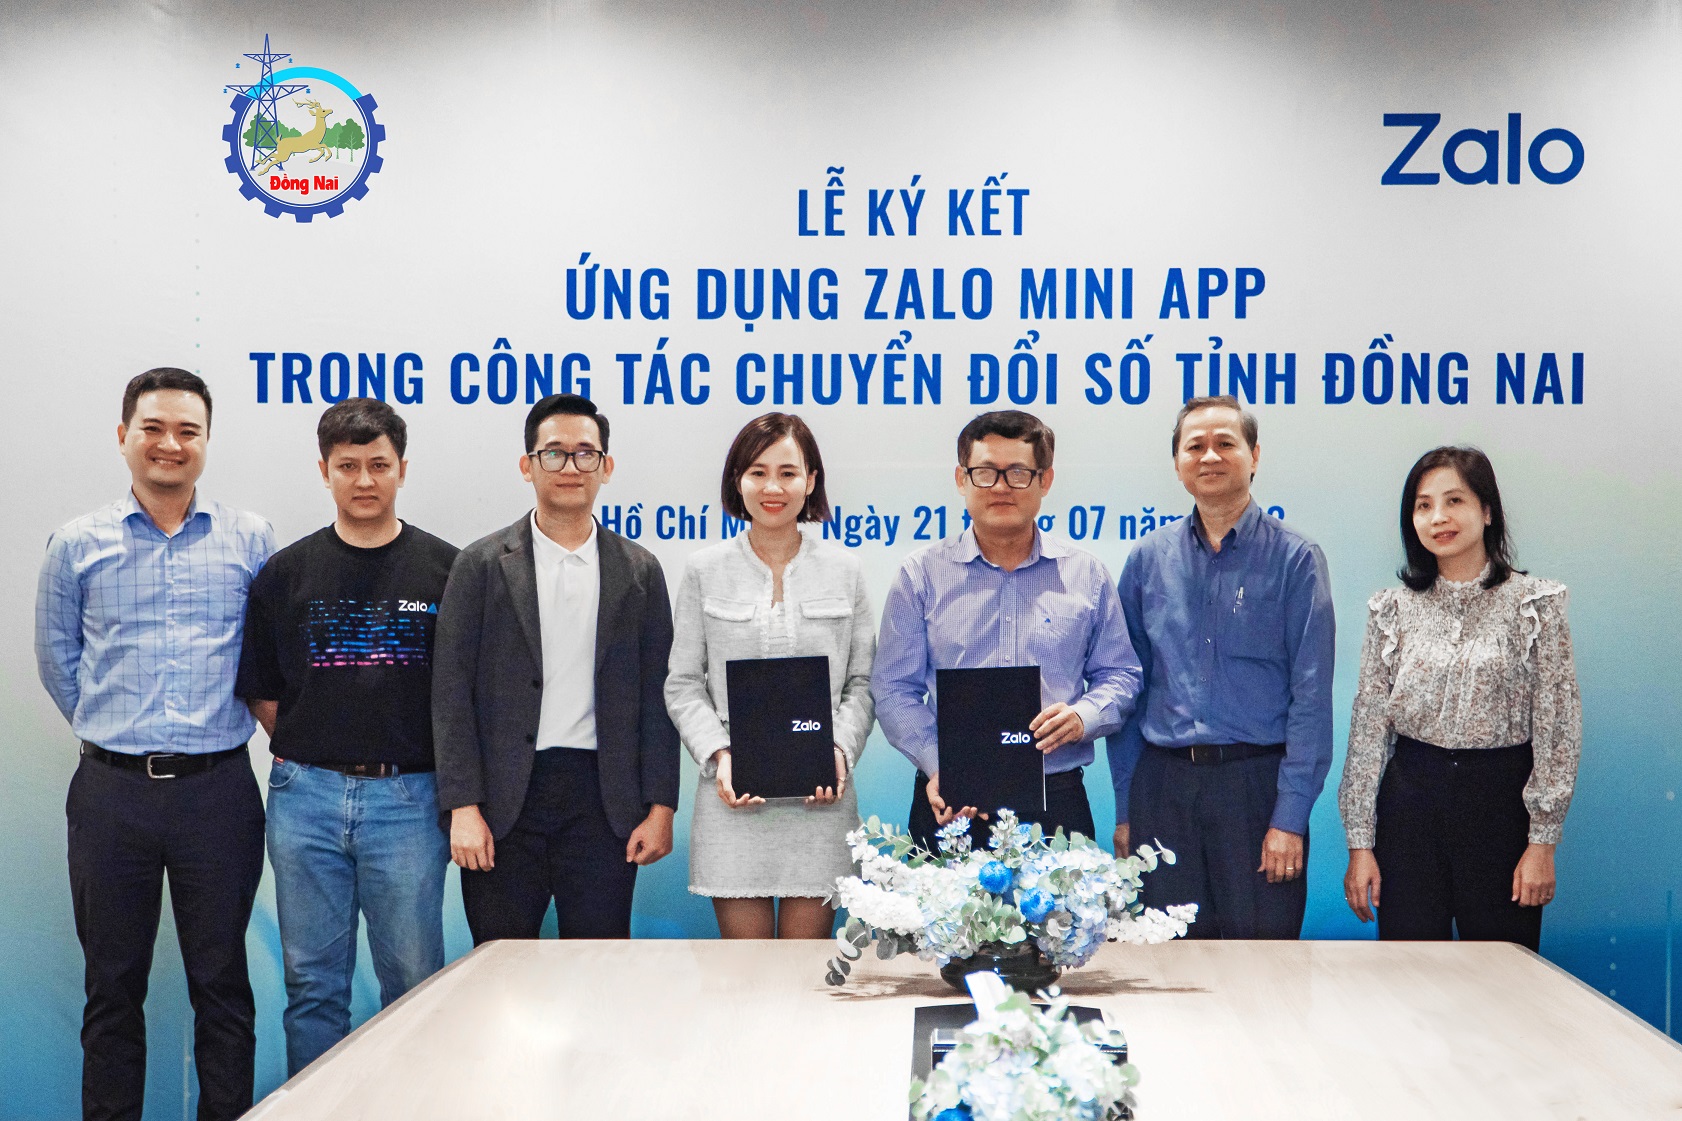 Đồng Nai triển khai mini app hành chính công trên Zalo - Dong Nai 1